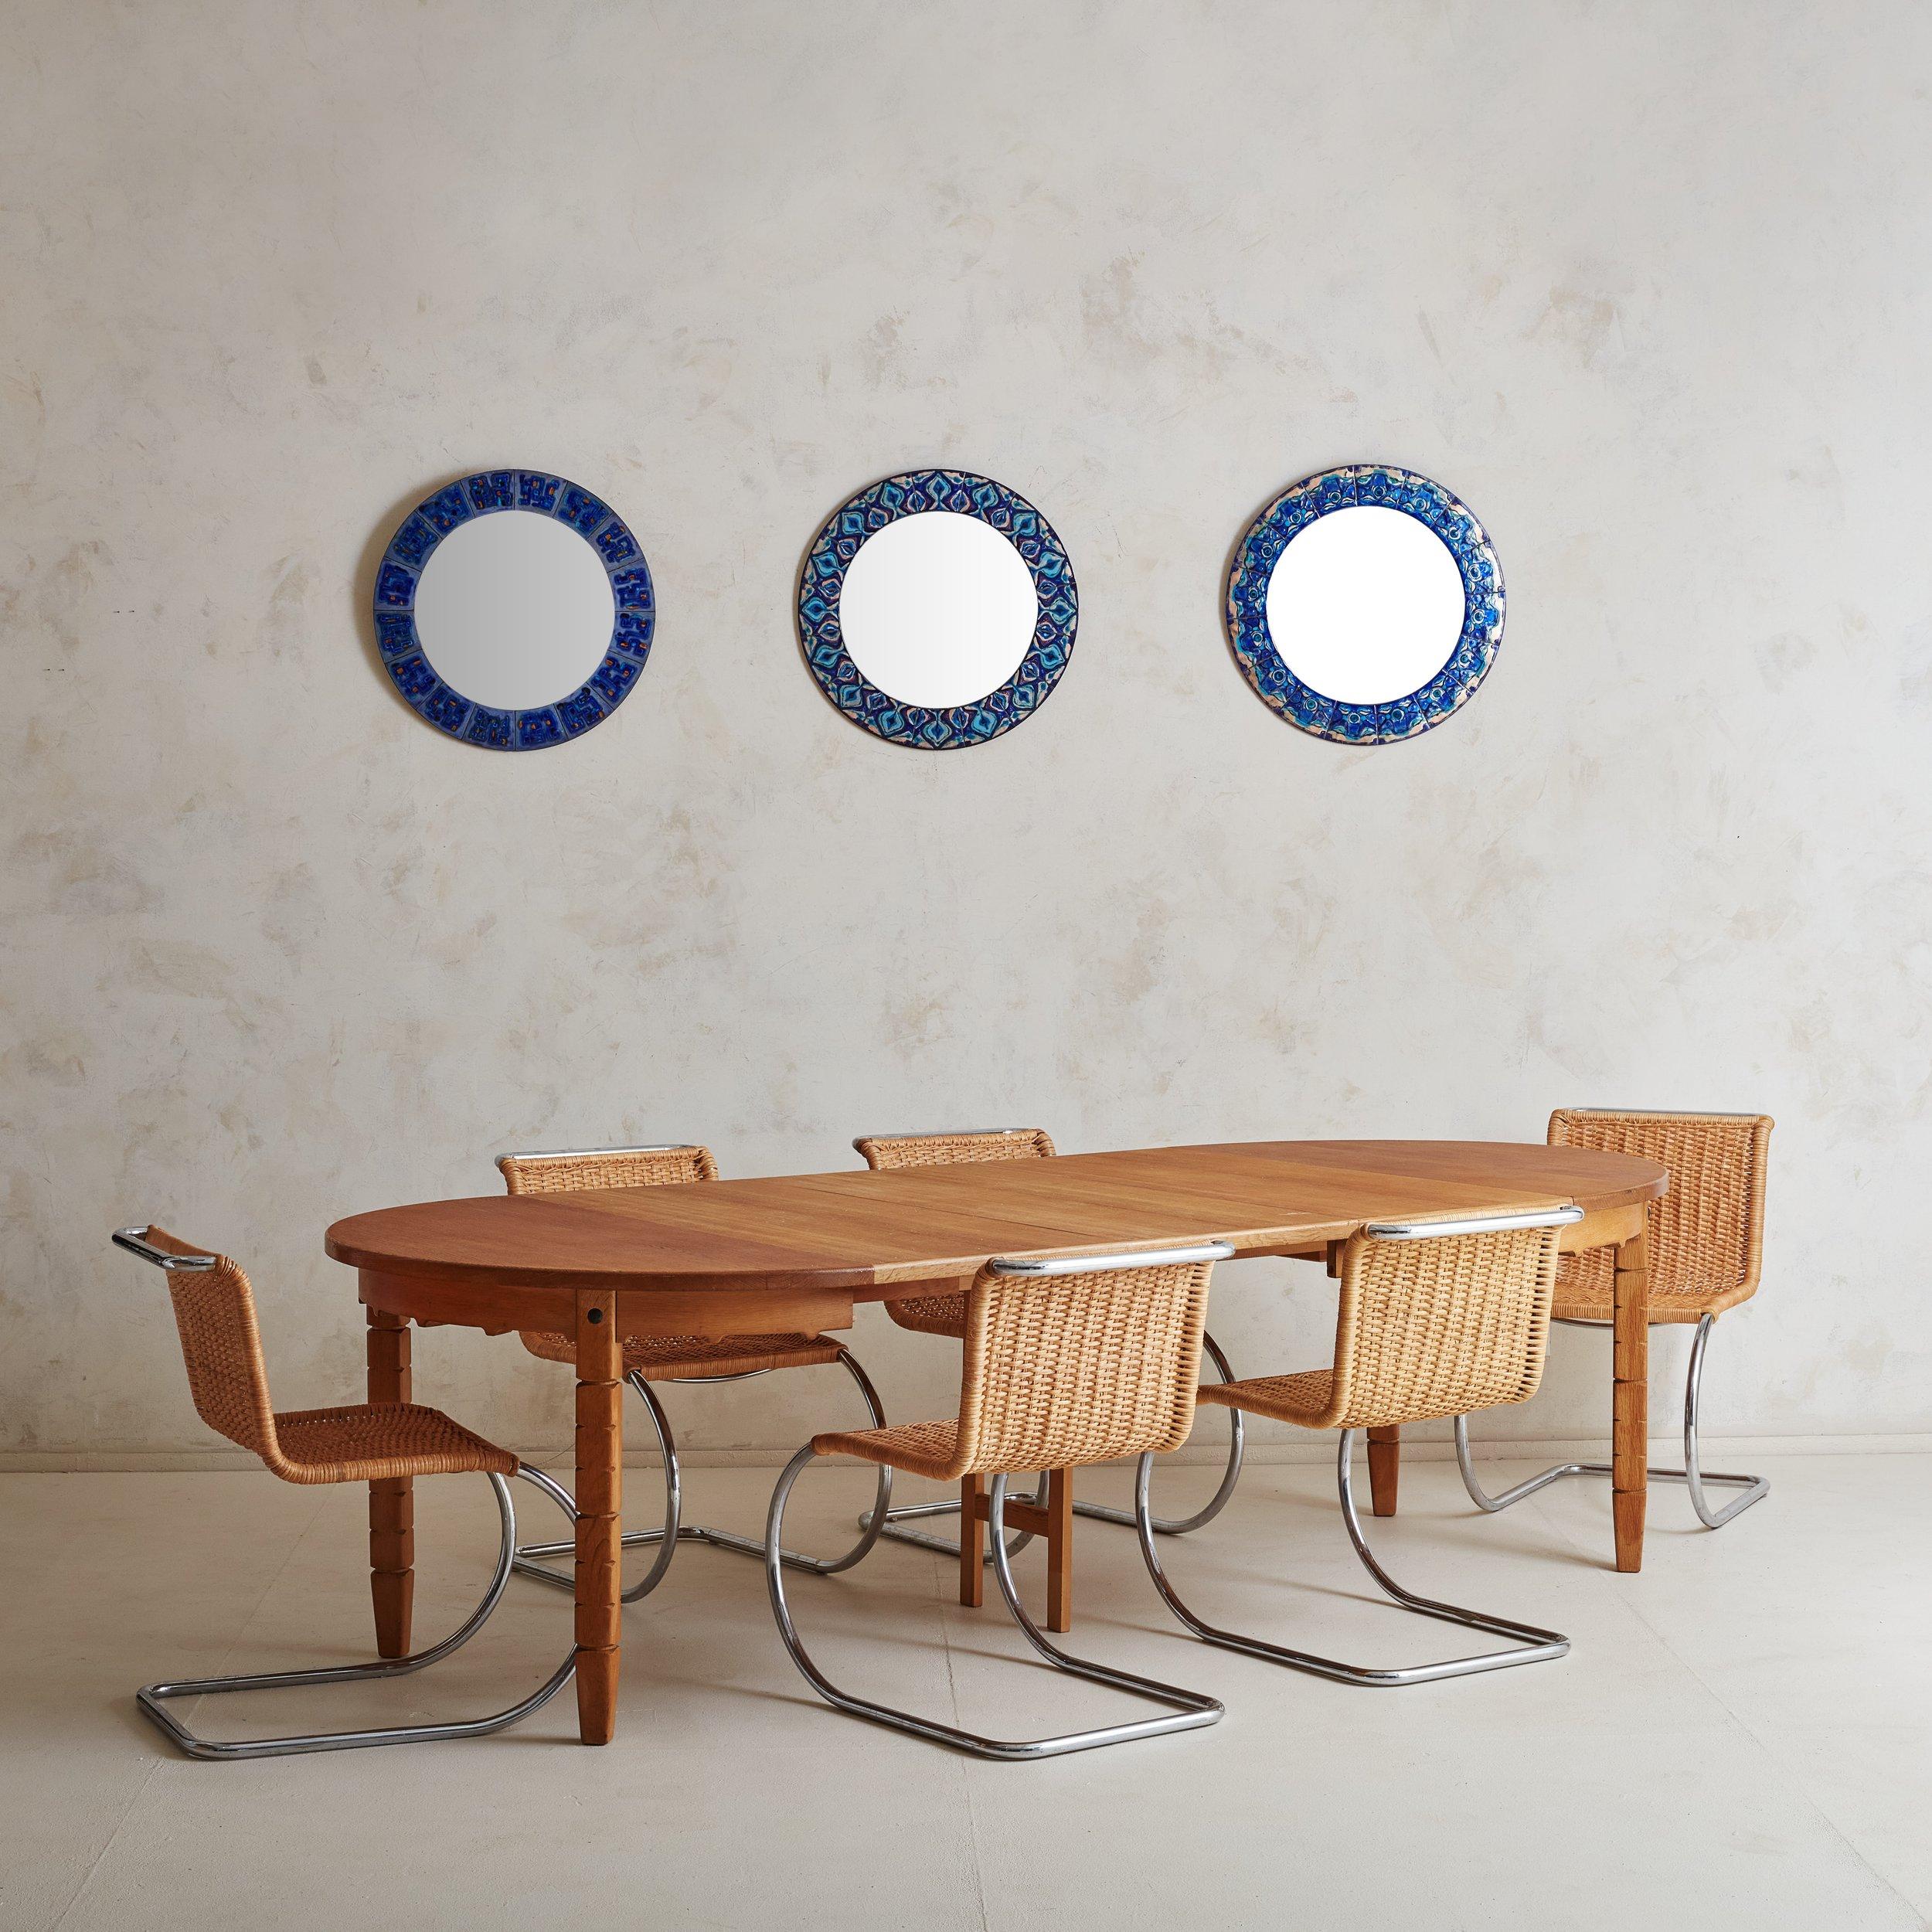 Table de salle à manger extensible en chêne de 1964 attribuée au designer de meubles danois Henning Kjærnulf. Cette table de salle à manger The Modern Scandinavian est fabriquée en chêne massif dans une finition miel chaleureuse et présente un